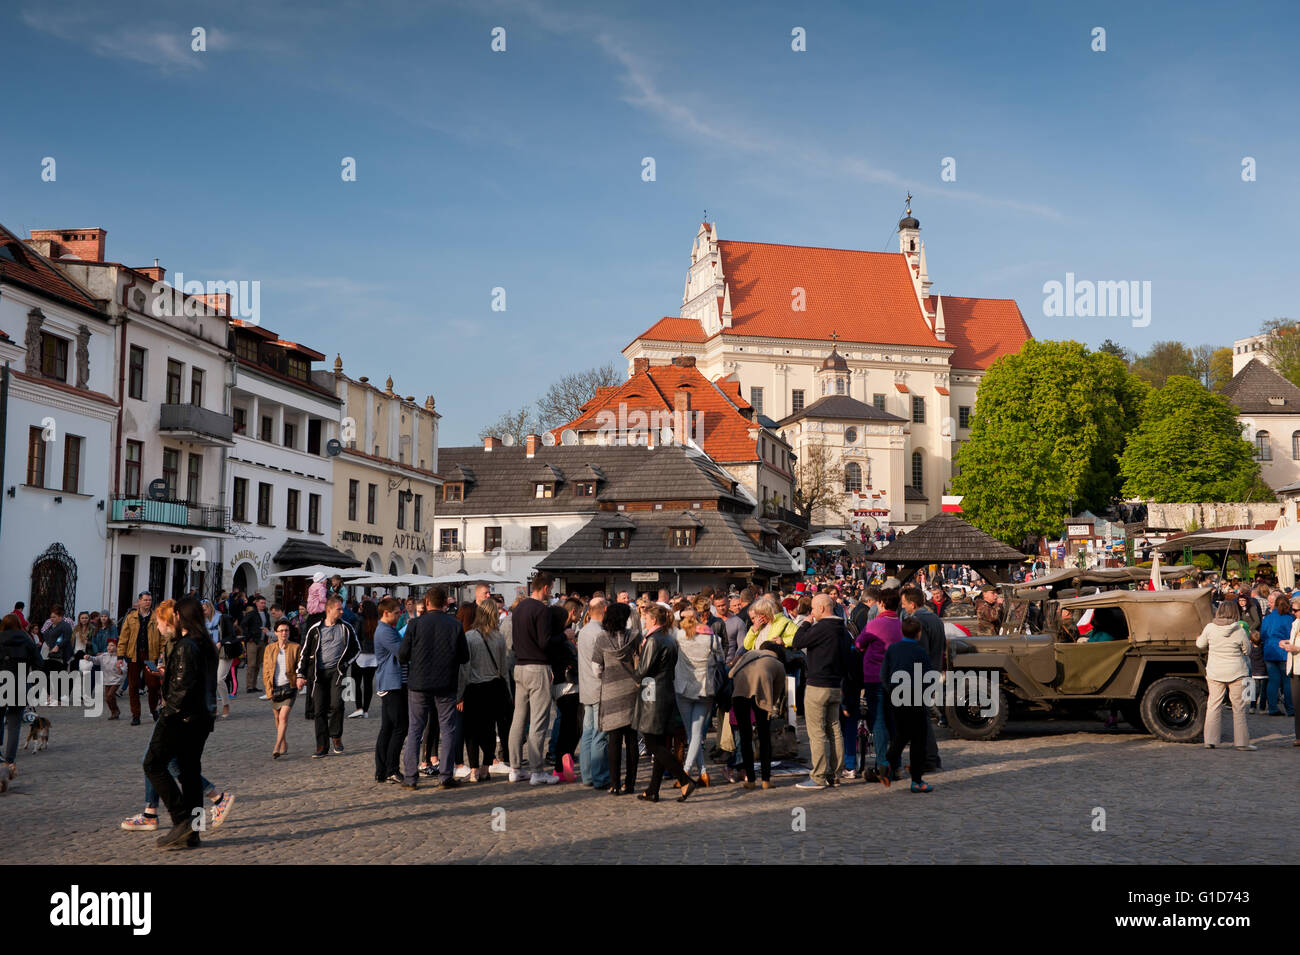 Überfüllten Marktplatz in Kazimierz Dolny, Polen, Europa, Pfarrkirche Gebäudehülle, Blick vom alten Marktplatz. Stockfoto